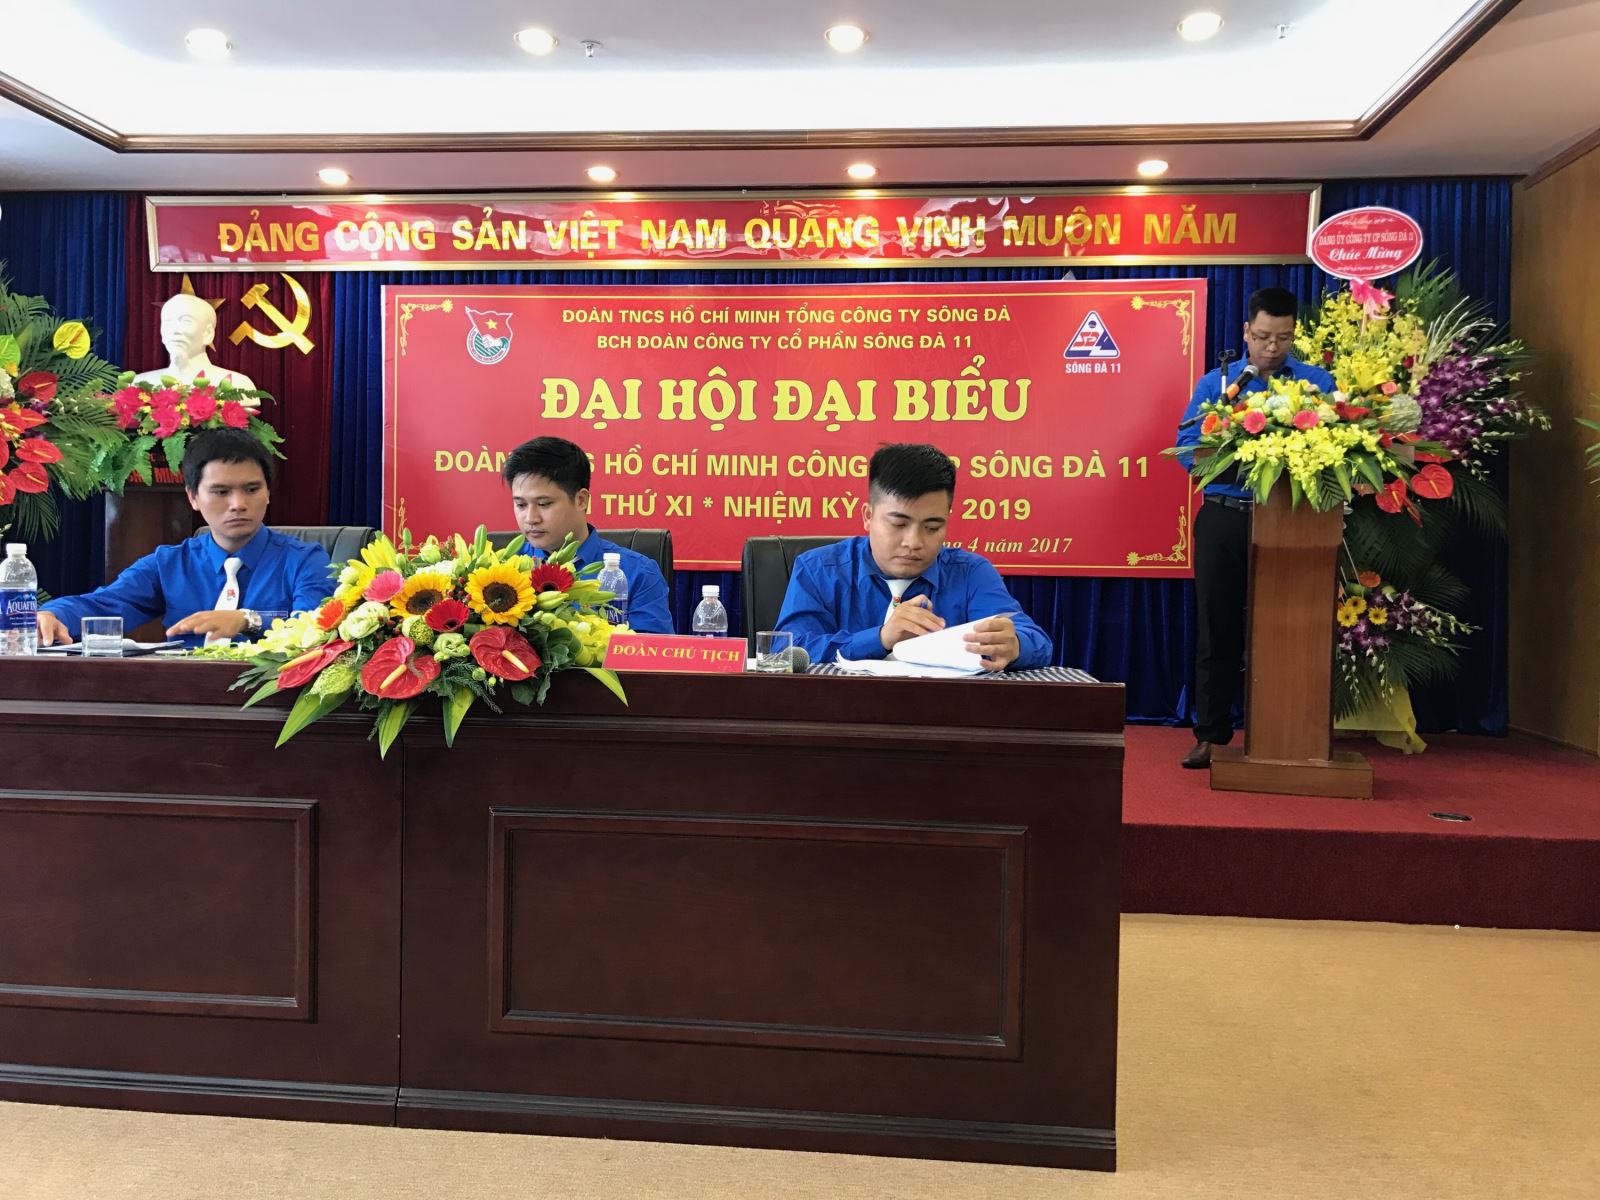 Đ/c Nguyễn Trung Kiên Đoàn viên Chi nhánh Sông Đà 11.1 tham luận tại Đại hội